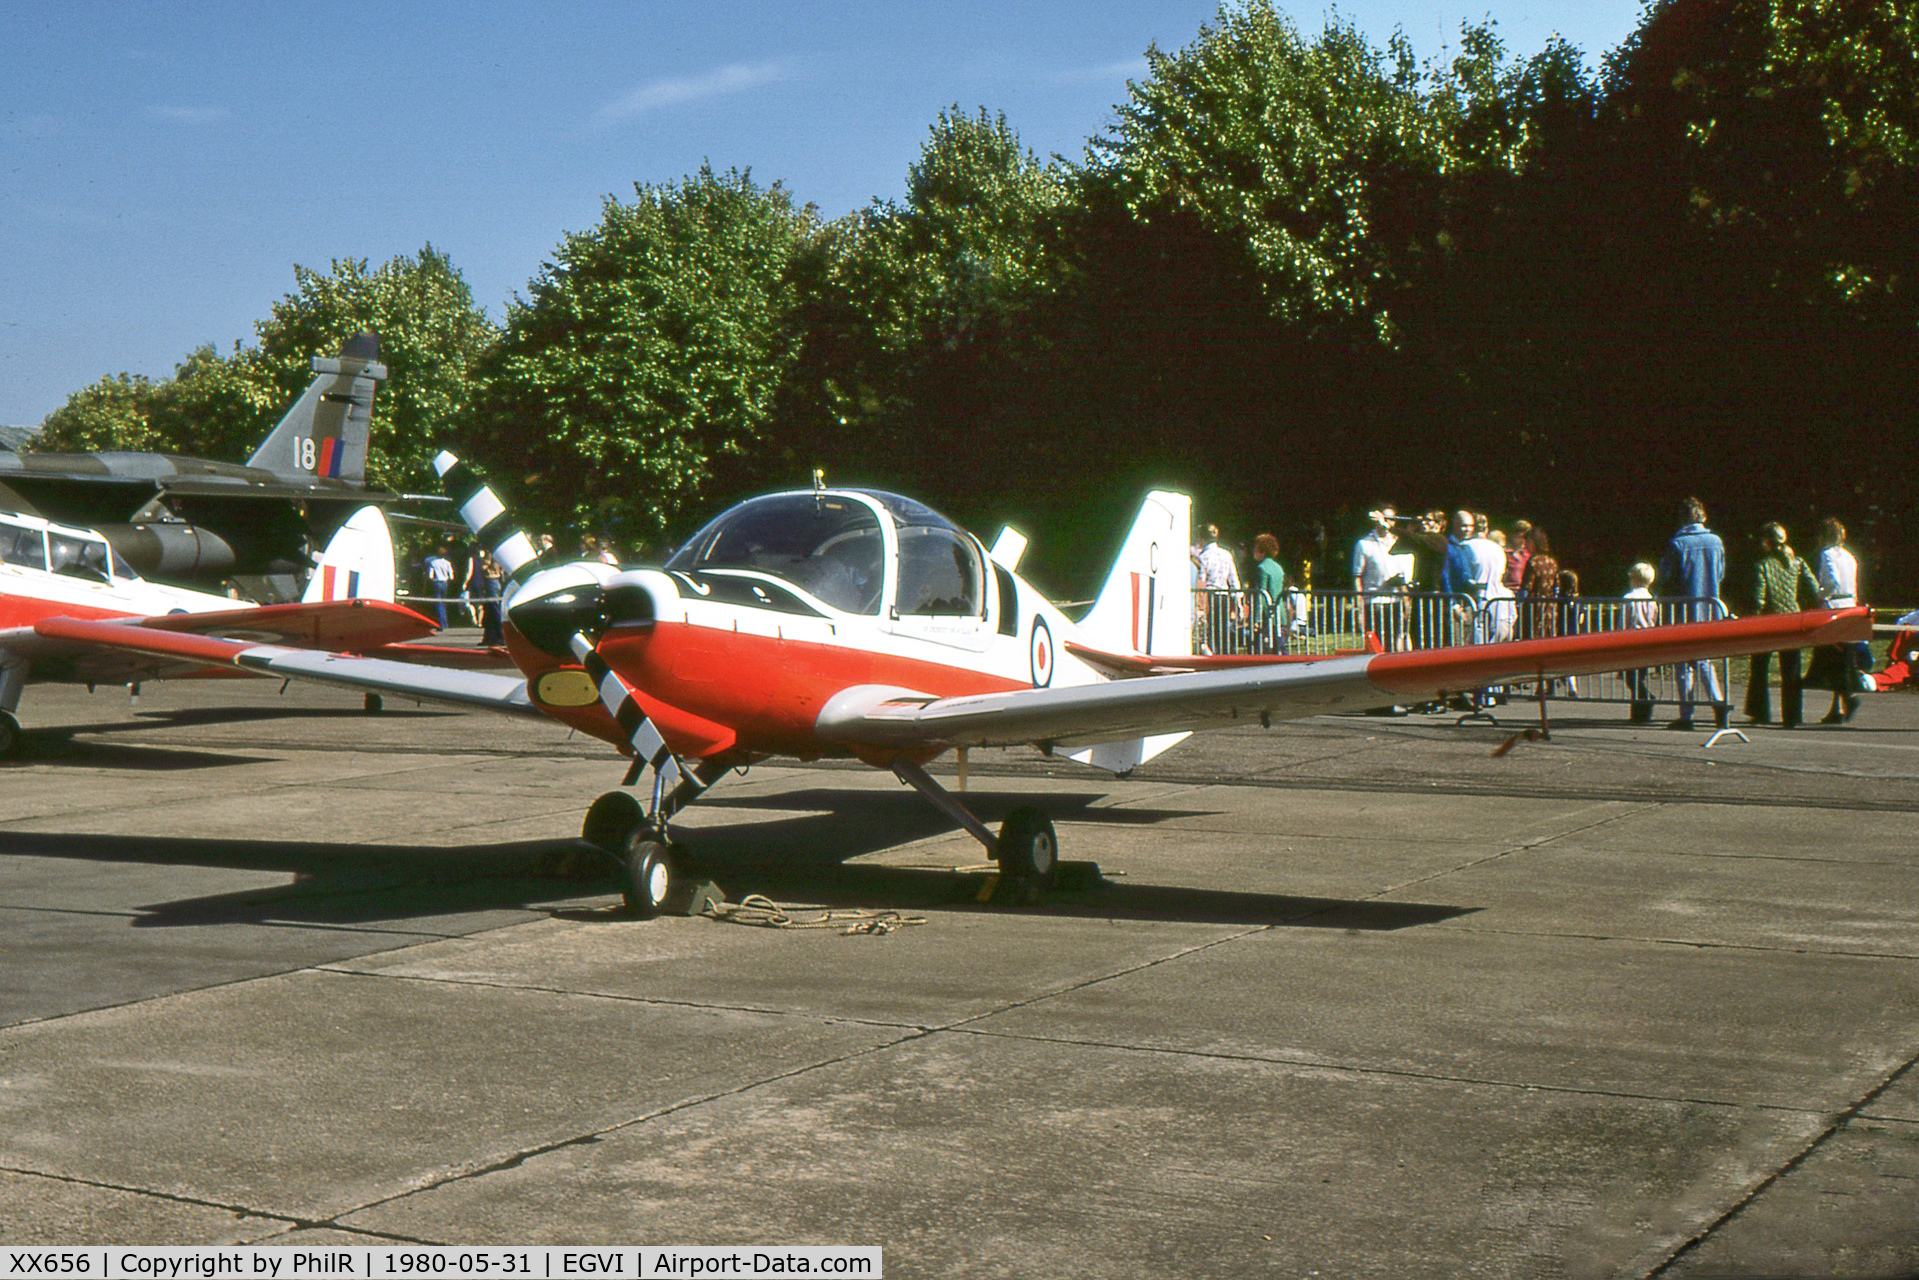 XX656, 1974 Scottish Aviation Bulldog T.1 C/N BH.120/314, XX656 1974 Scottish Aviation Bulldog T1 IAT